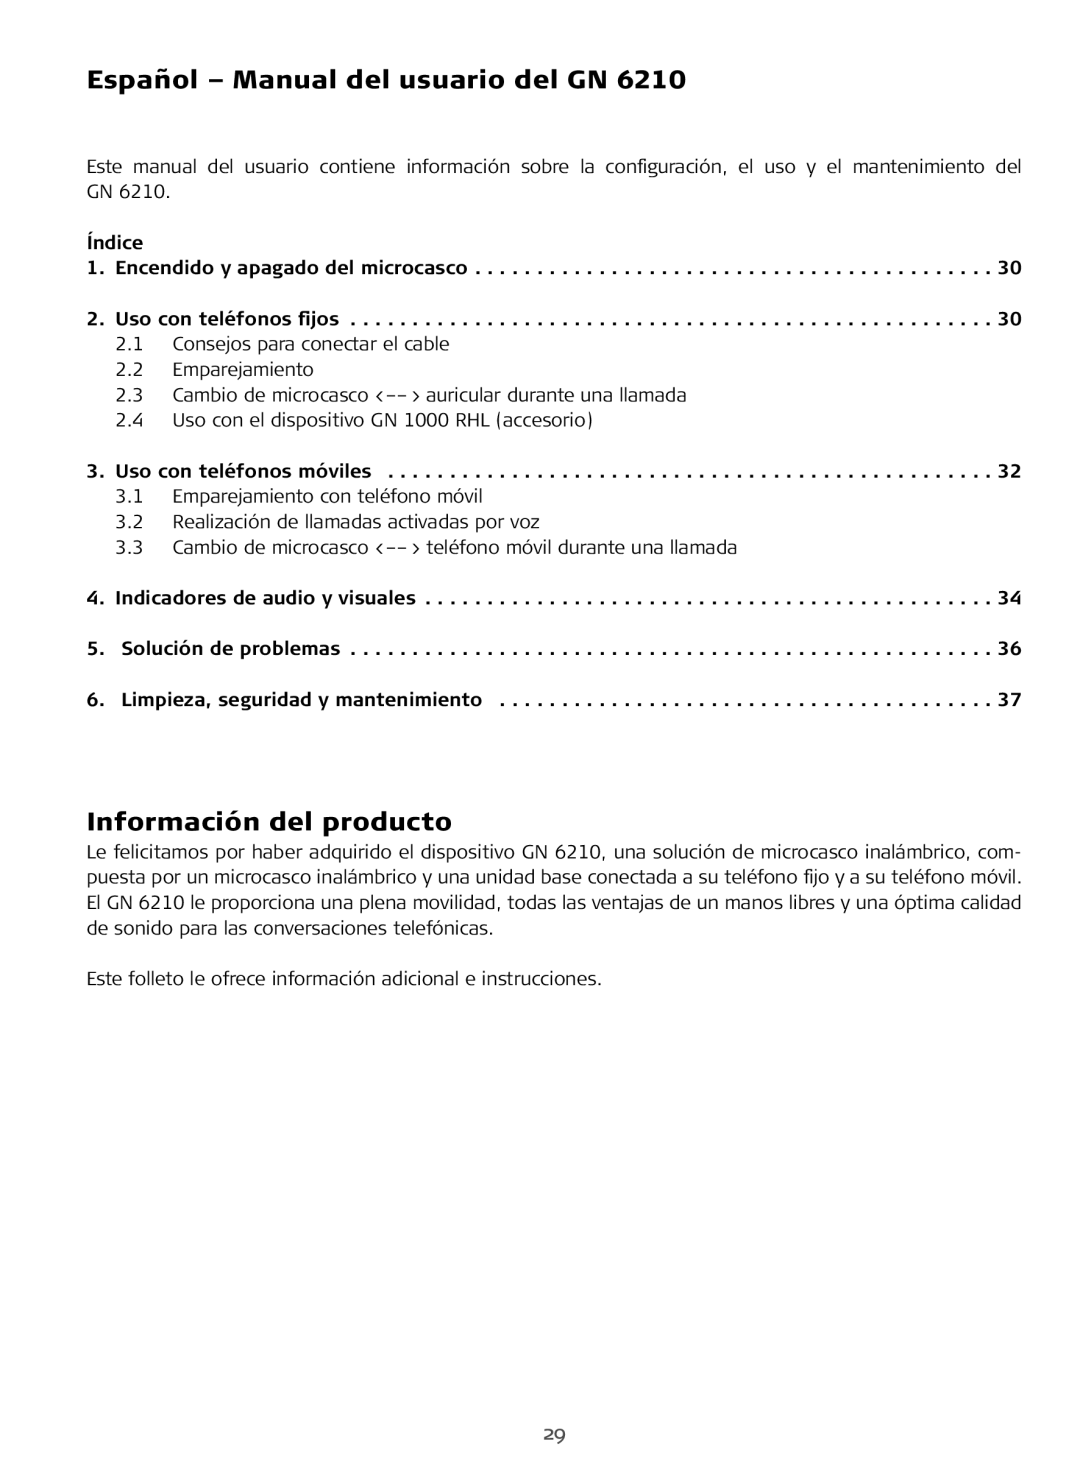 Sony FR 20 manual Español - Manual del usuario del GN, Información del producto 